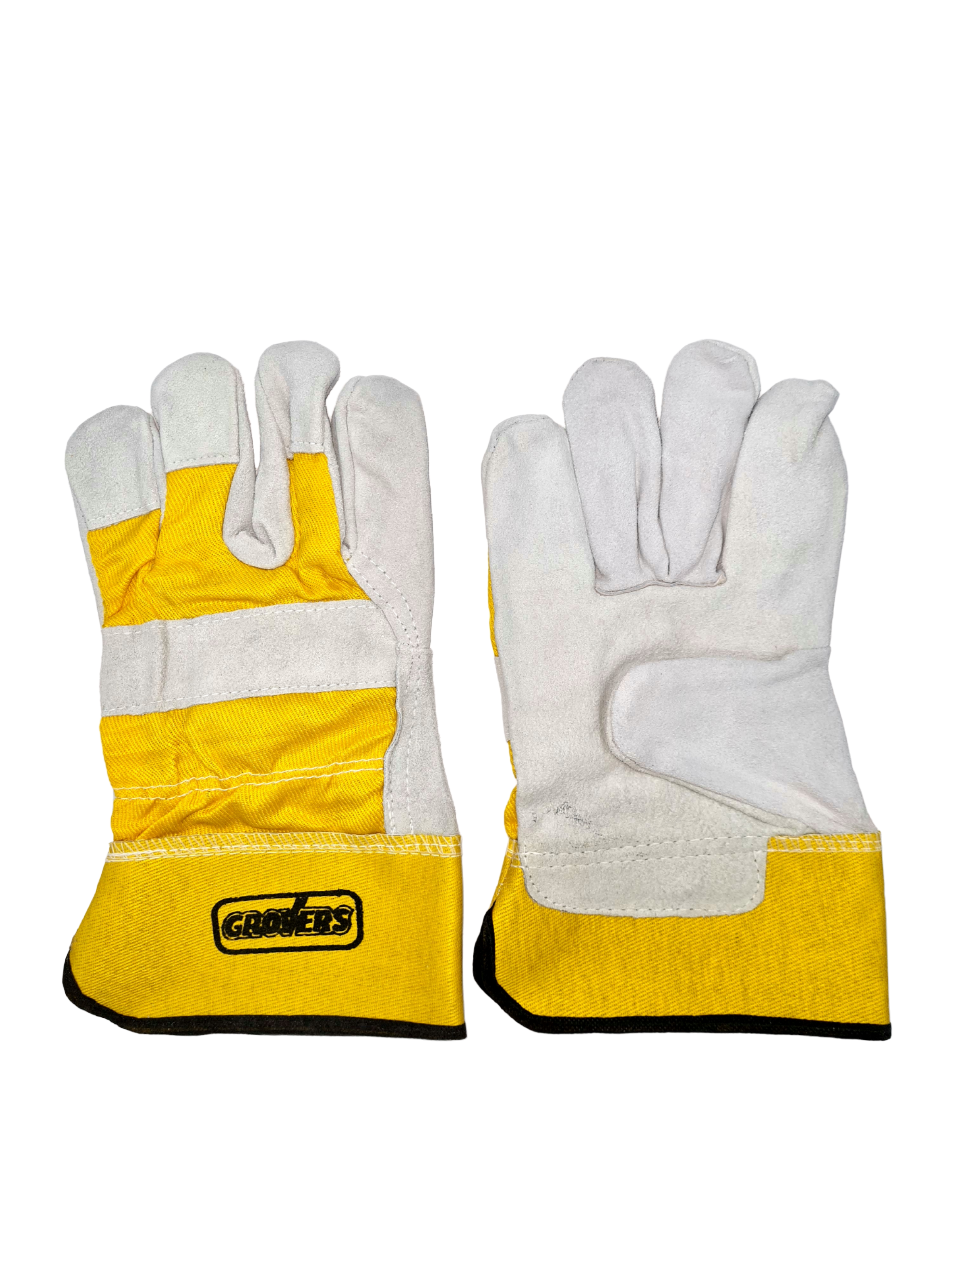 Перчатки GROVERS Easy Work (S-591) зимние рабочие утепленные перчатки с обливом tegera 683а 10